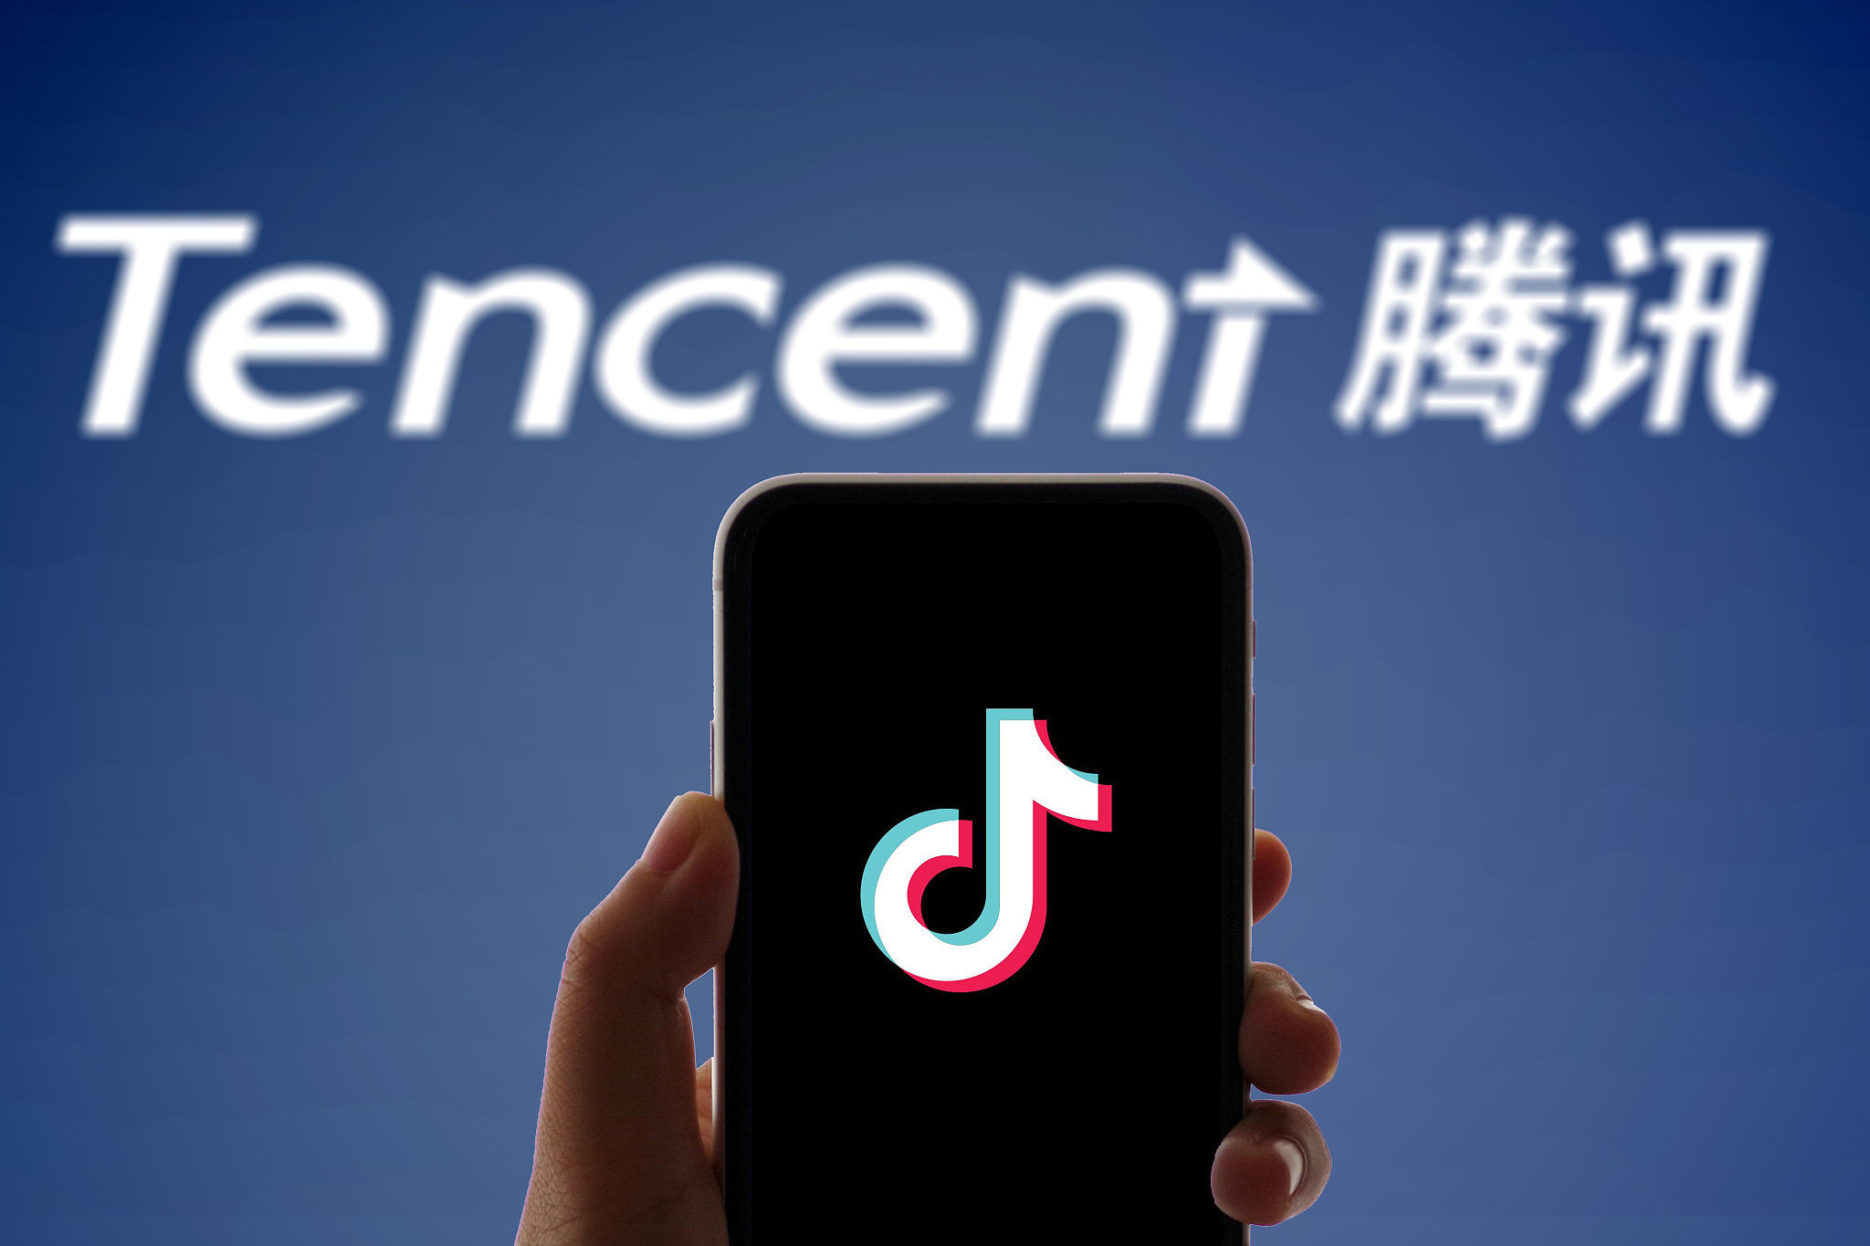 Douyin sues Tencent Credit Lianshengguijinshu